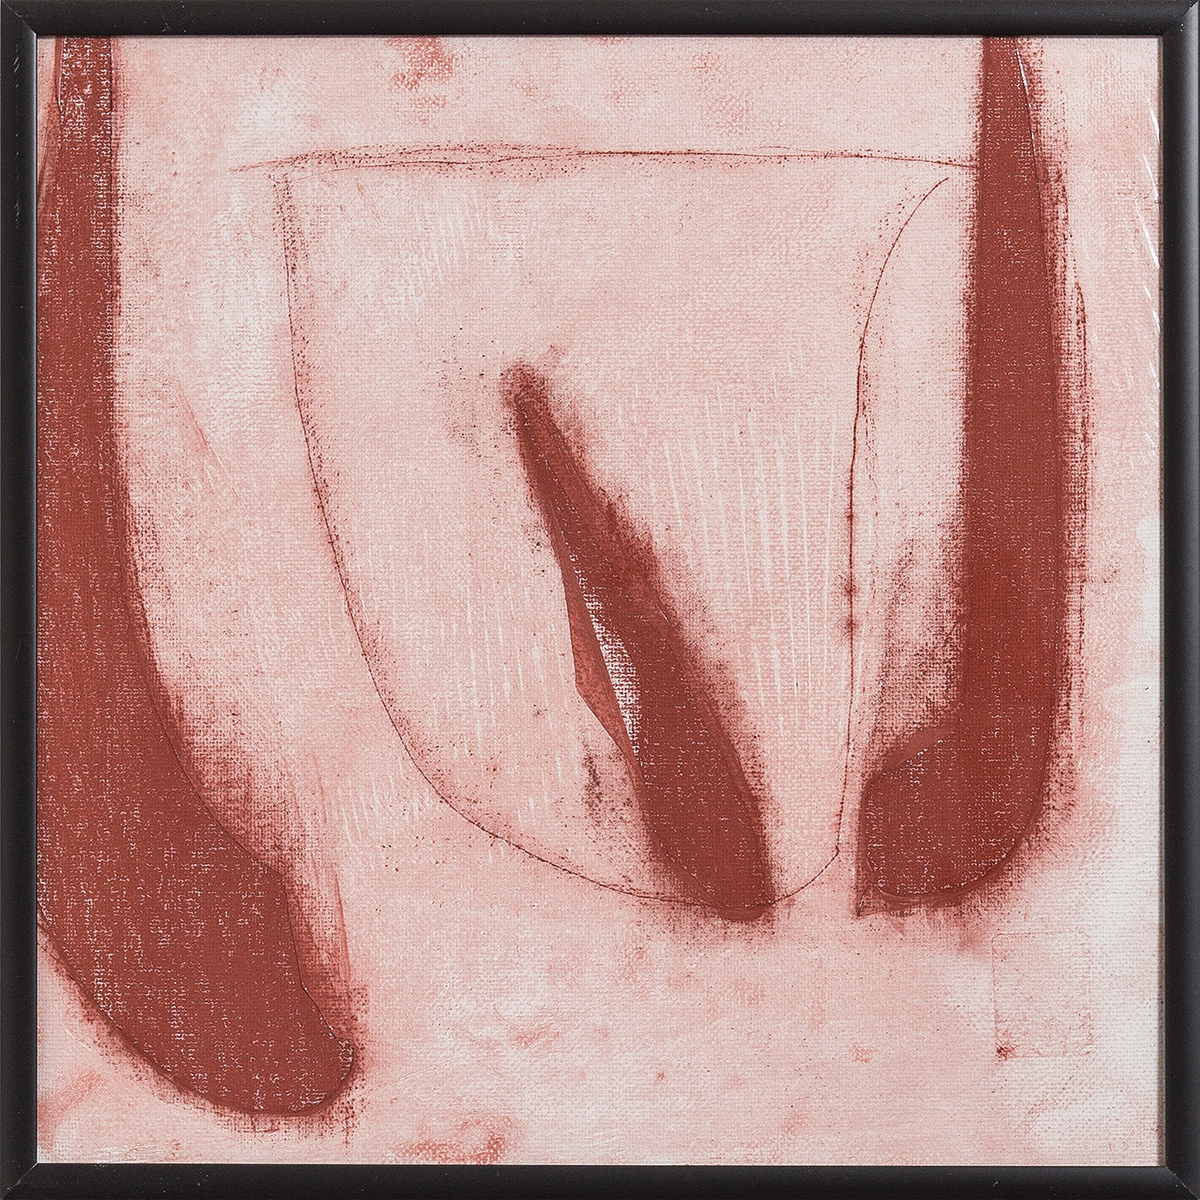 Frottements rouge 2, 201730 x 30 cmLeinwand auf Karton, einfoliert, Rötel-Pastellkreide;Alu-Wechselrahmen